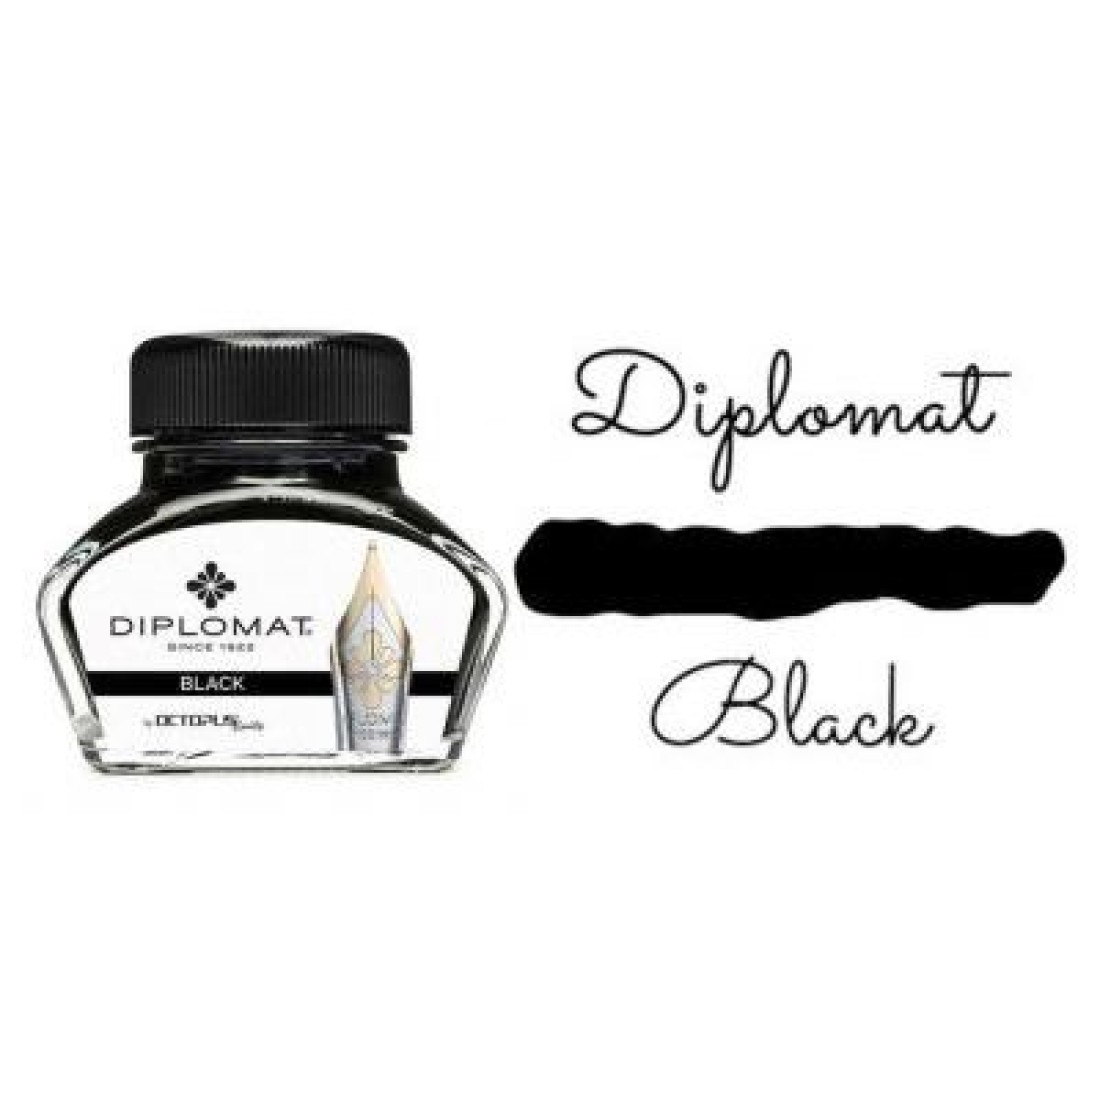 Diplomat Black Ink - Ink - / Ink Appelboom.com